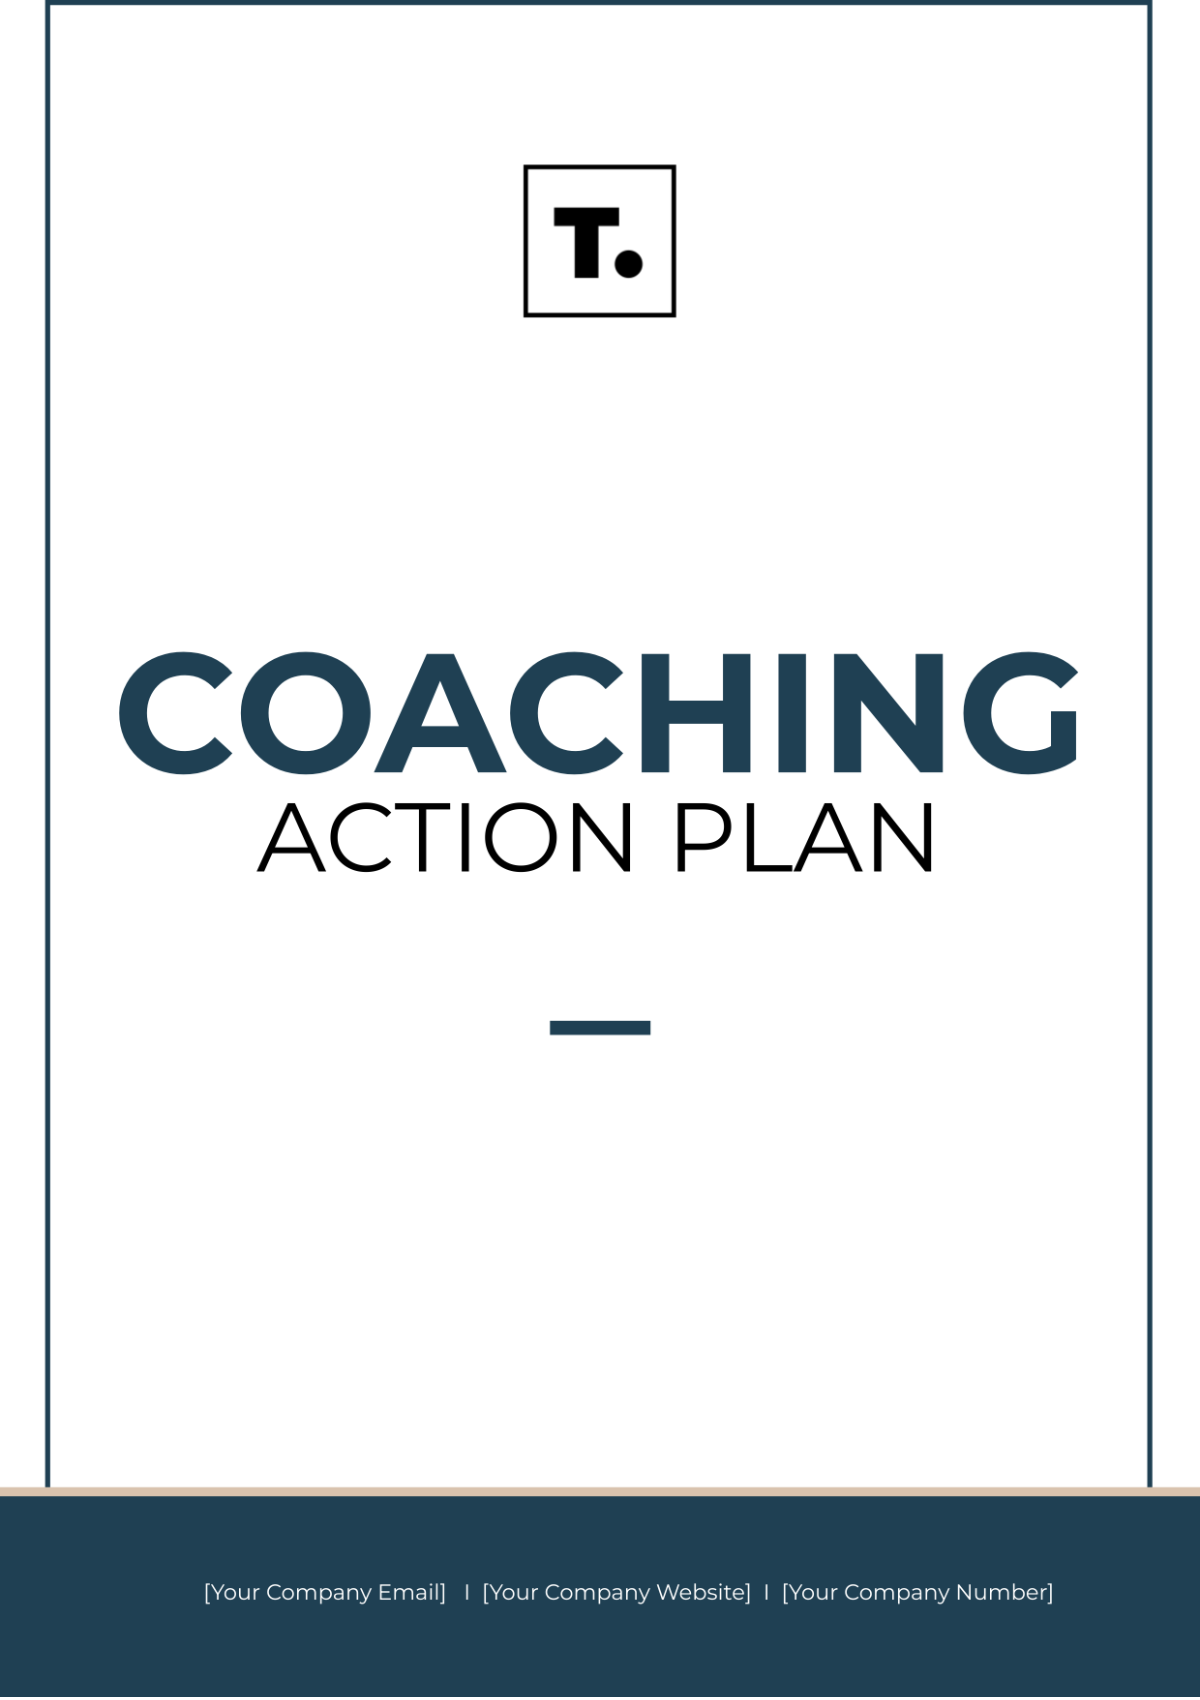 Free Coaching Action Plan Template